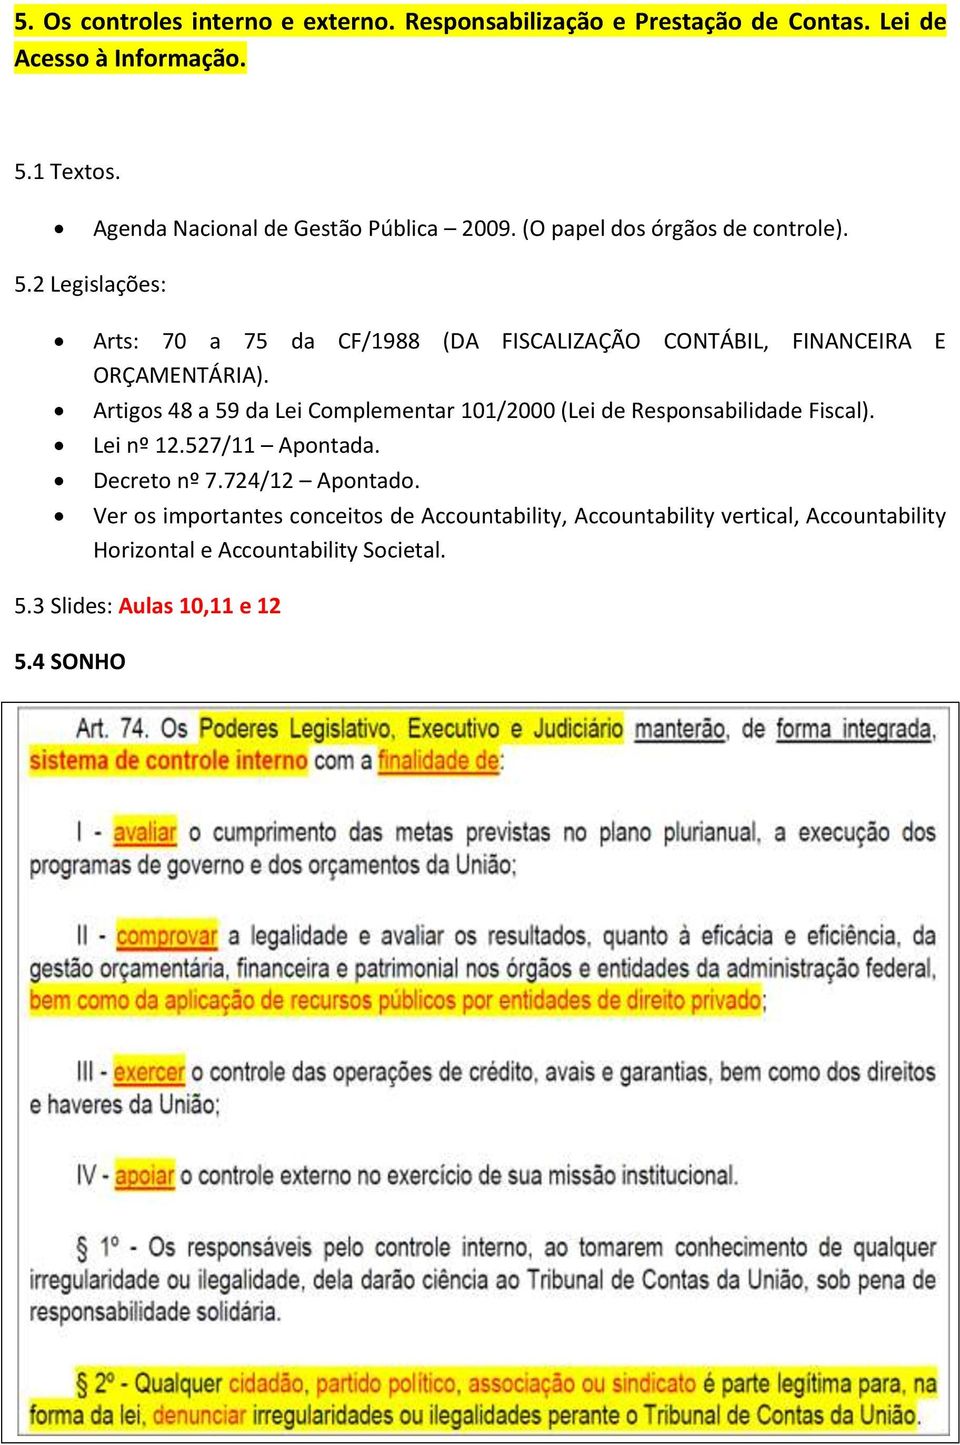 2 Legislações: Arts: 70 a 75 da CF/1988 (DA FISCALIZAÇÃO CONTÁBIL, FINANCEIRA E ORÇAMENTÁRIA).